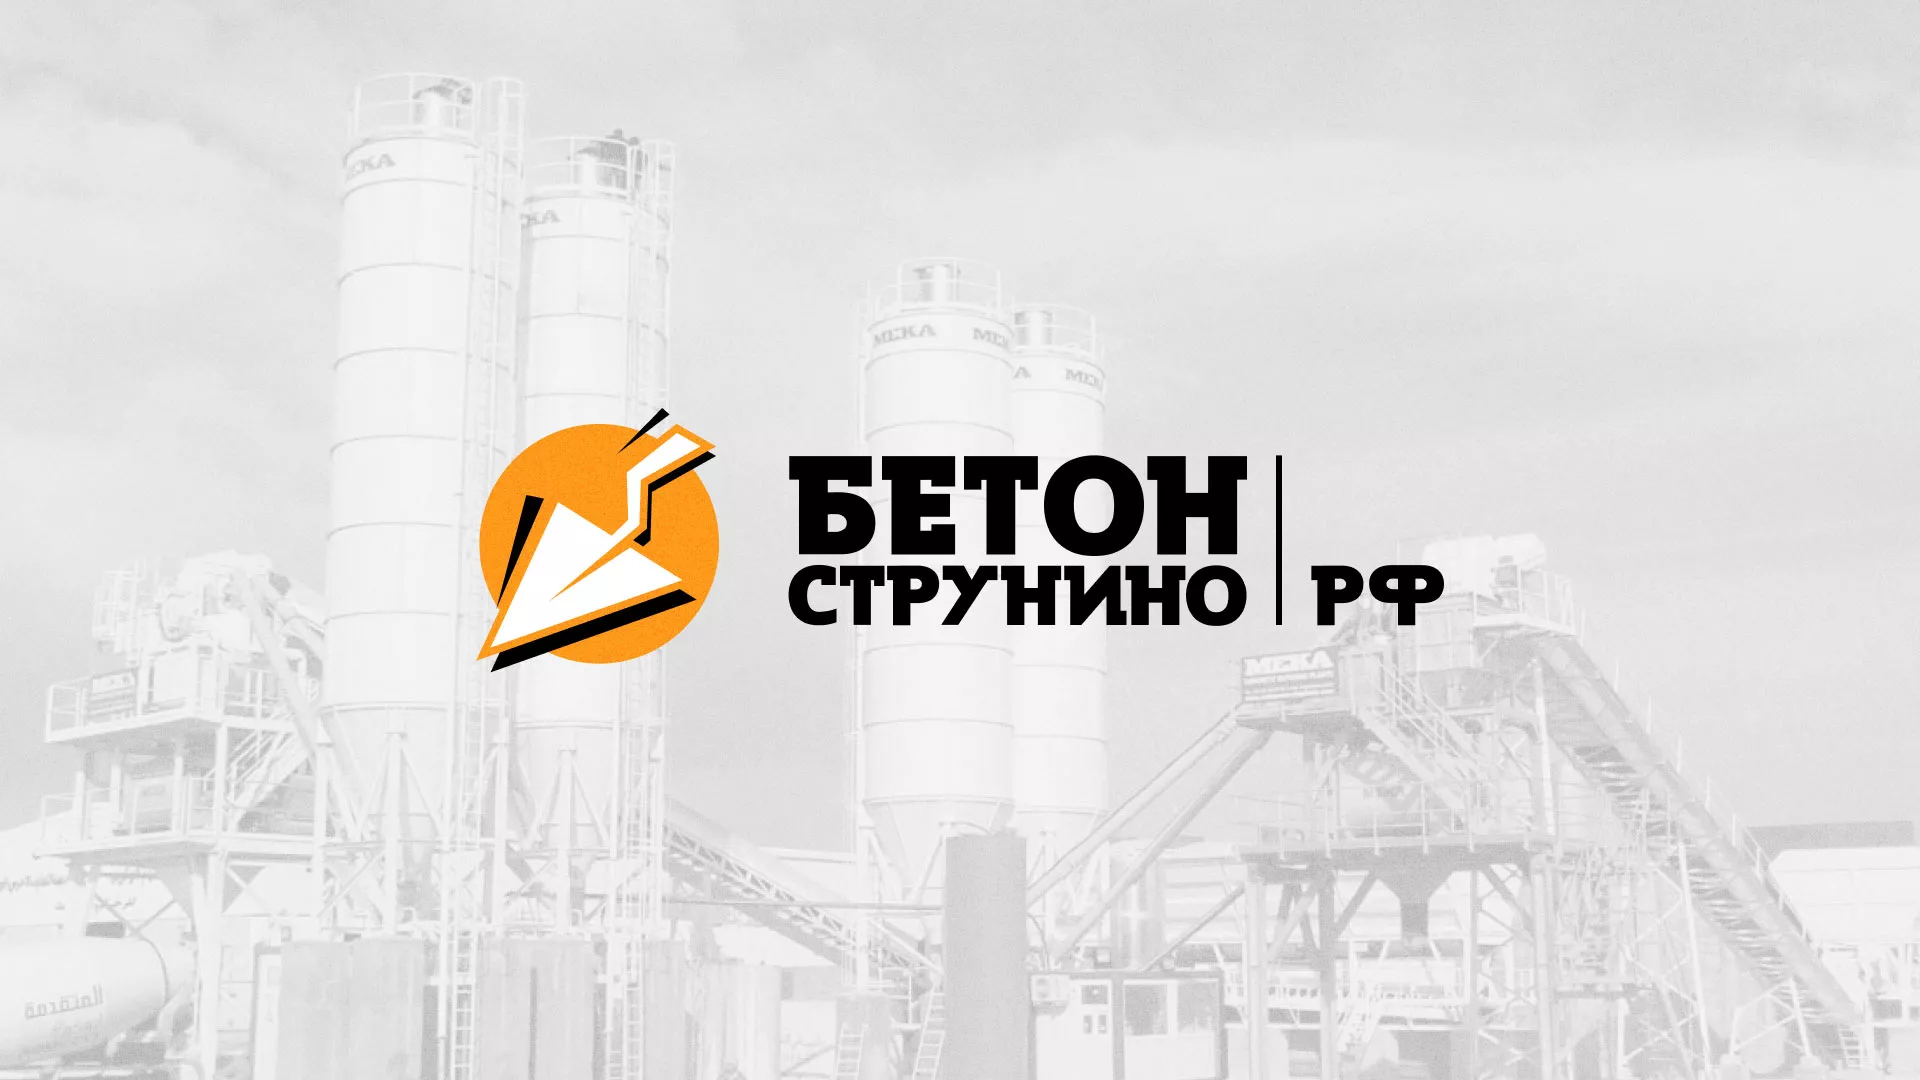 Разработка логотипа для бетонного завода в Бологом